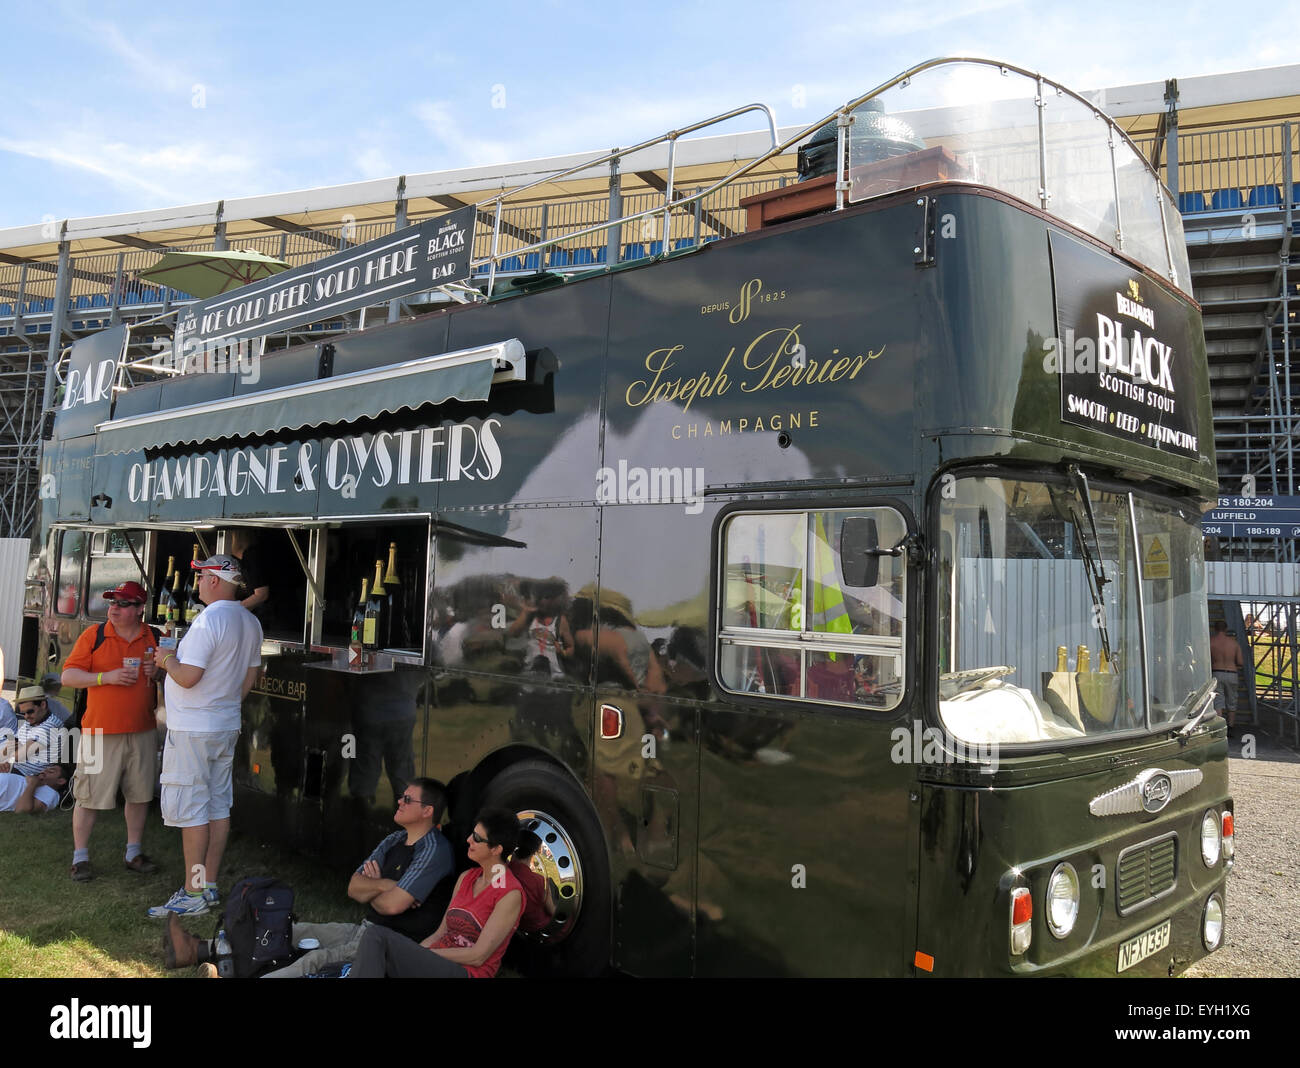 Black Bus, Joseph Perrier Champagner und Oyster Bar auf einer Veranstaltung in England, Großbritannien Stockfoto